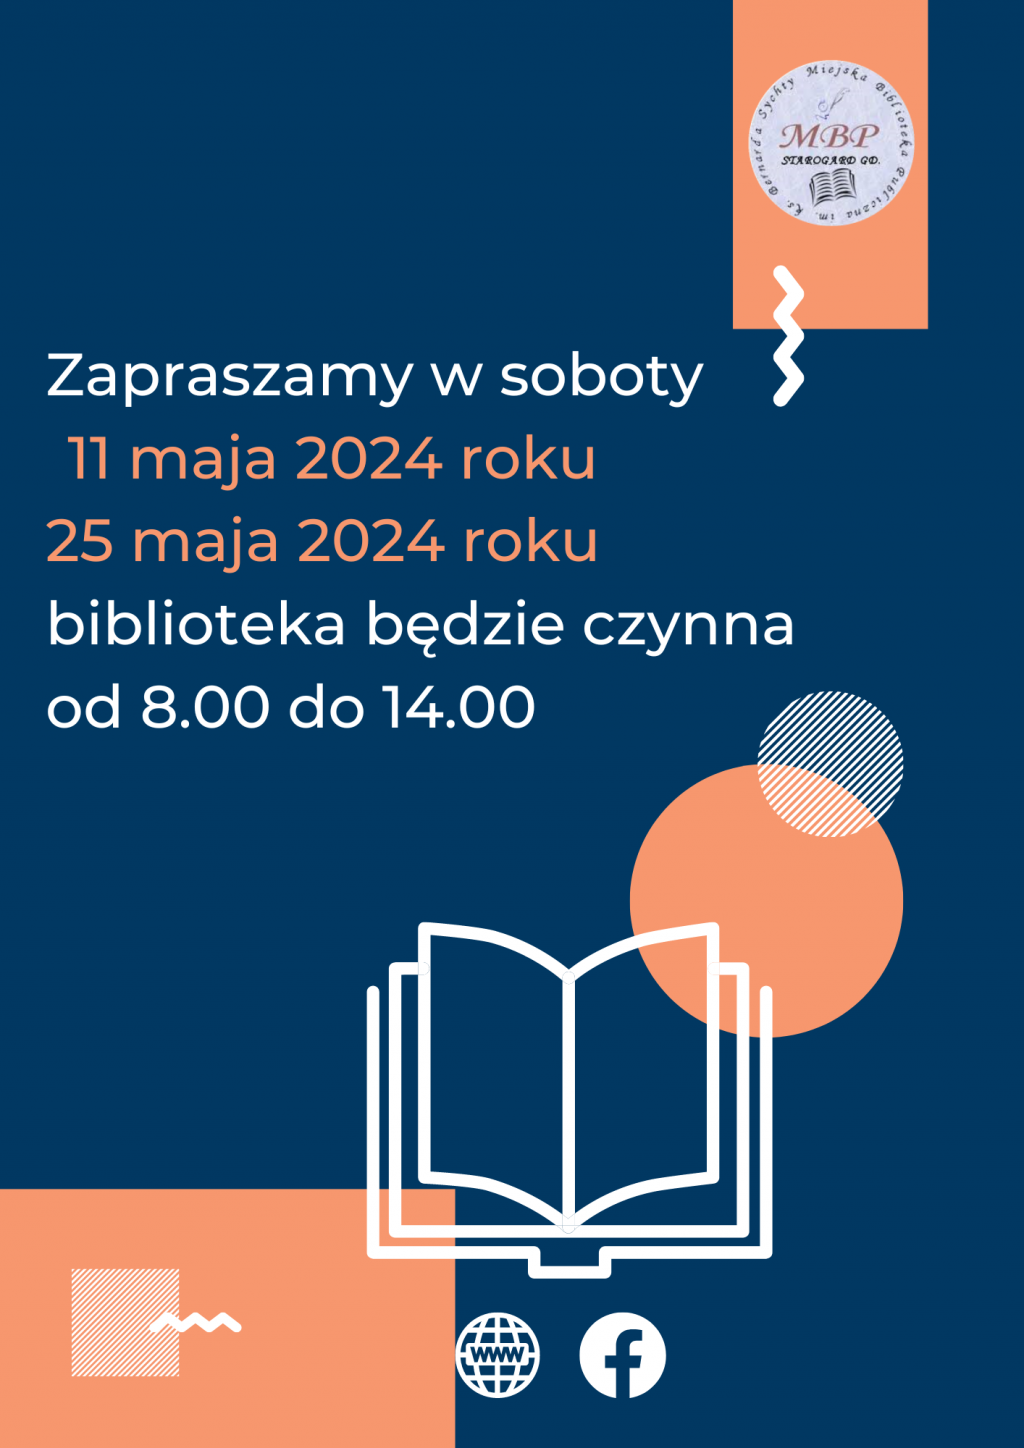 Plakat informujący o pracujących sobotach: 11 maja i 25 maja 2024, biblioteka będzie czynna od 8.00 do 14.00. Miejska Biblioteka Publiczna w Starogardzie Gdańskim.